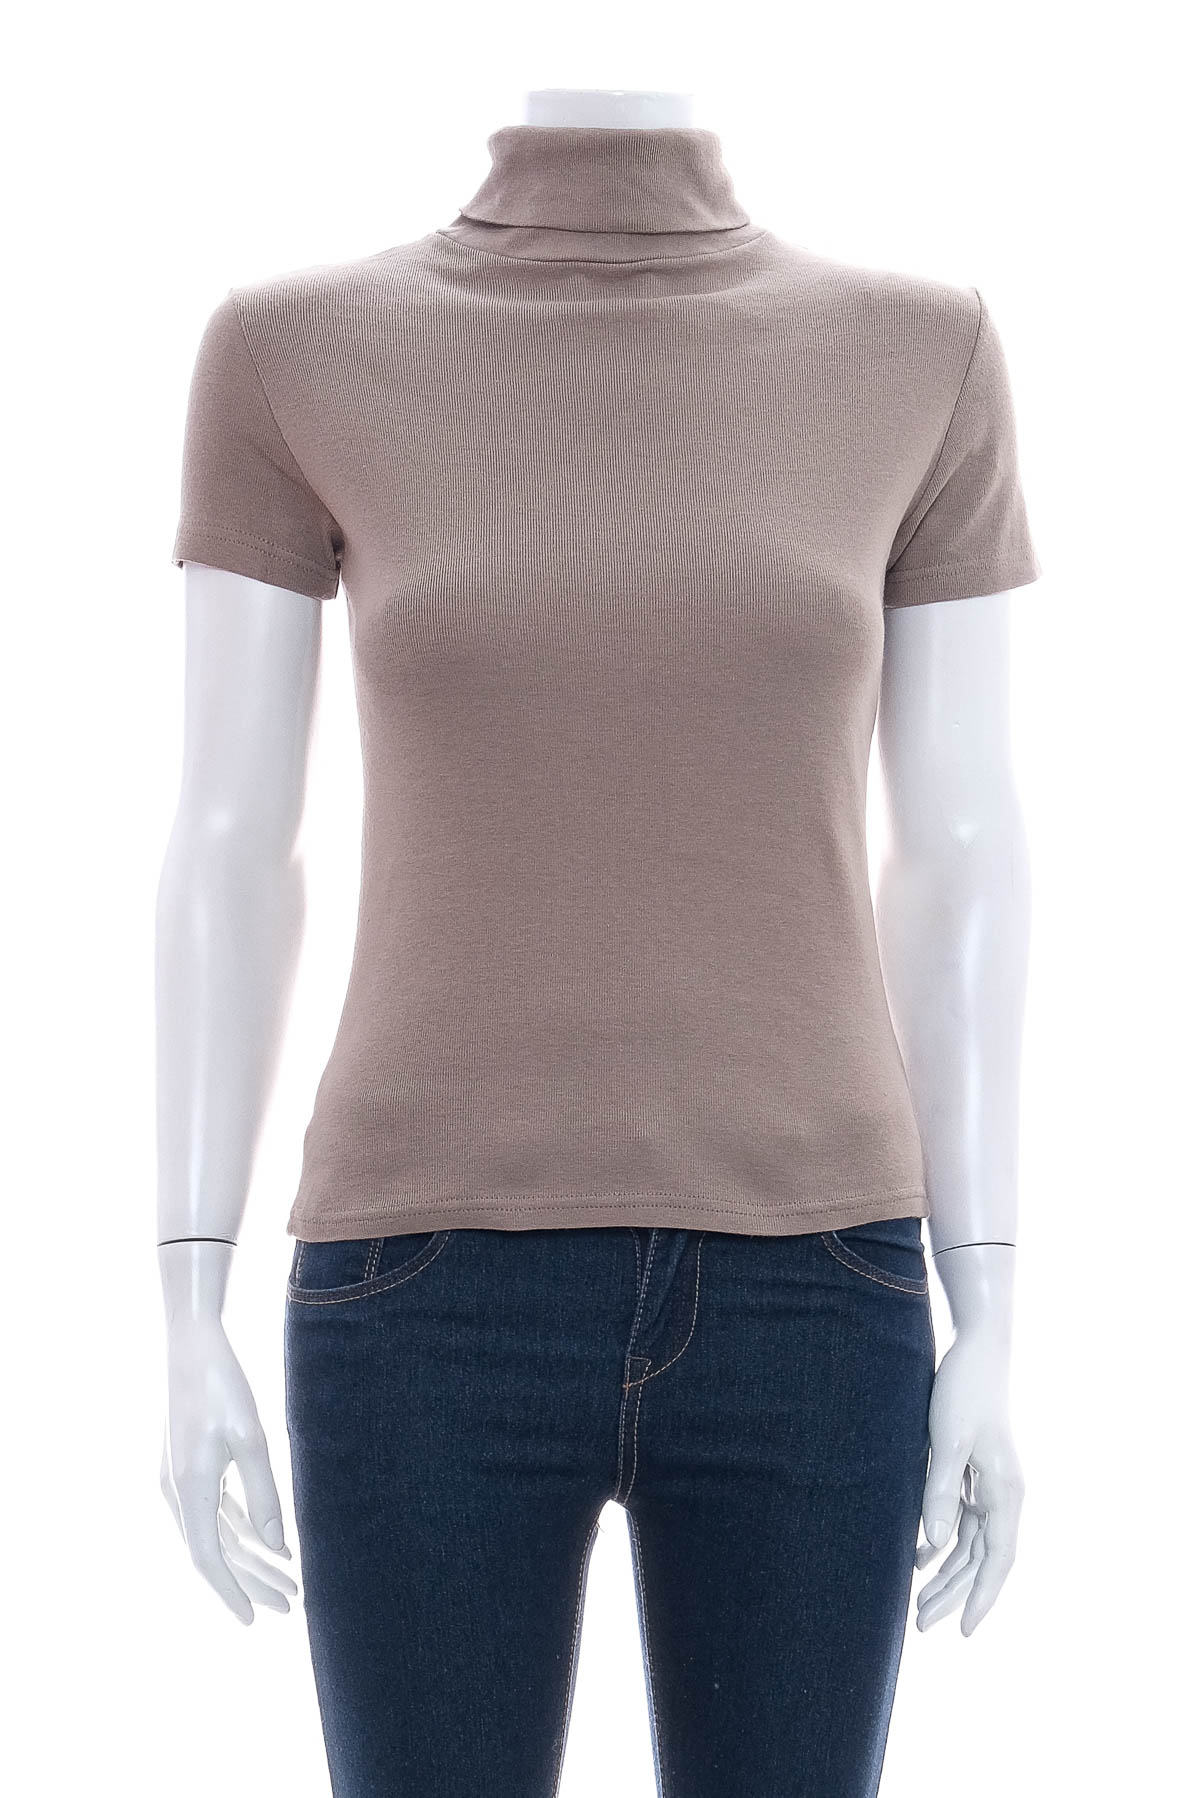 Γυναικεία μπλούζα - Akropol - 0